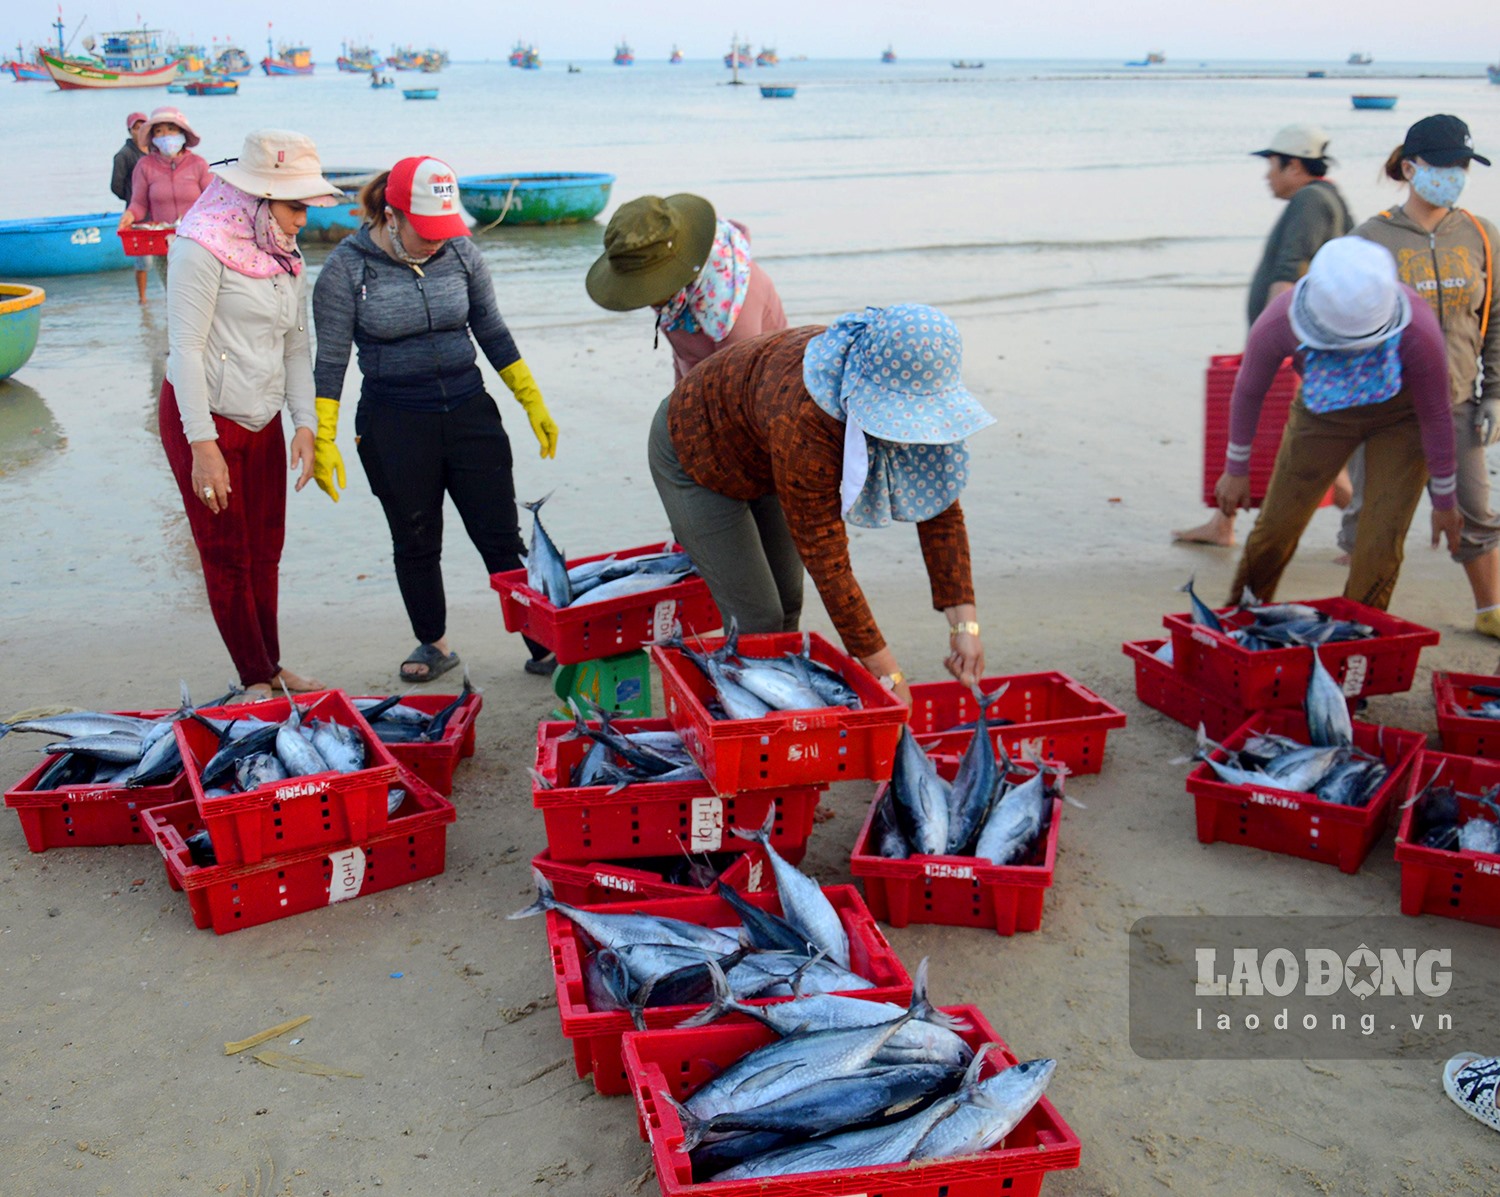 Chợ làng biển ở Quảng Ngãi, trên trời ánh bình minh, dưới tấp nập người mua bán, toàn thấy cá là cá - Ảnh 5.